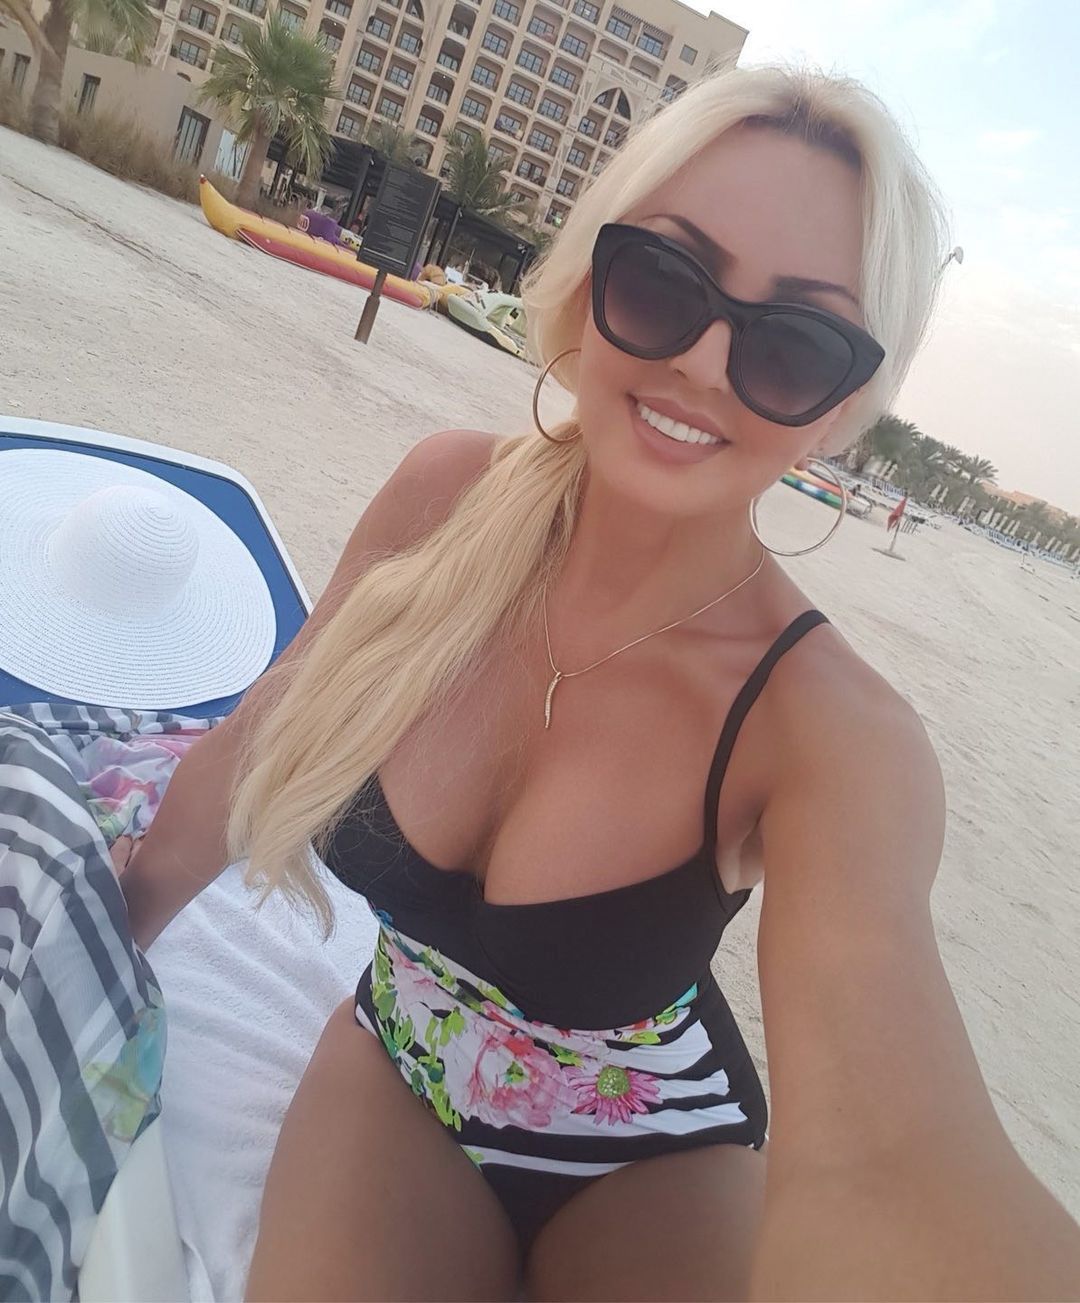 Teresa Werner na plaży, fot. Instagram.com/teresa_werner_official